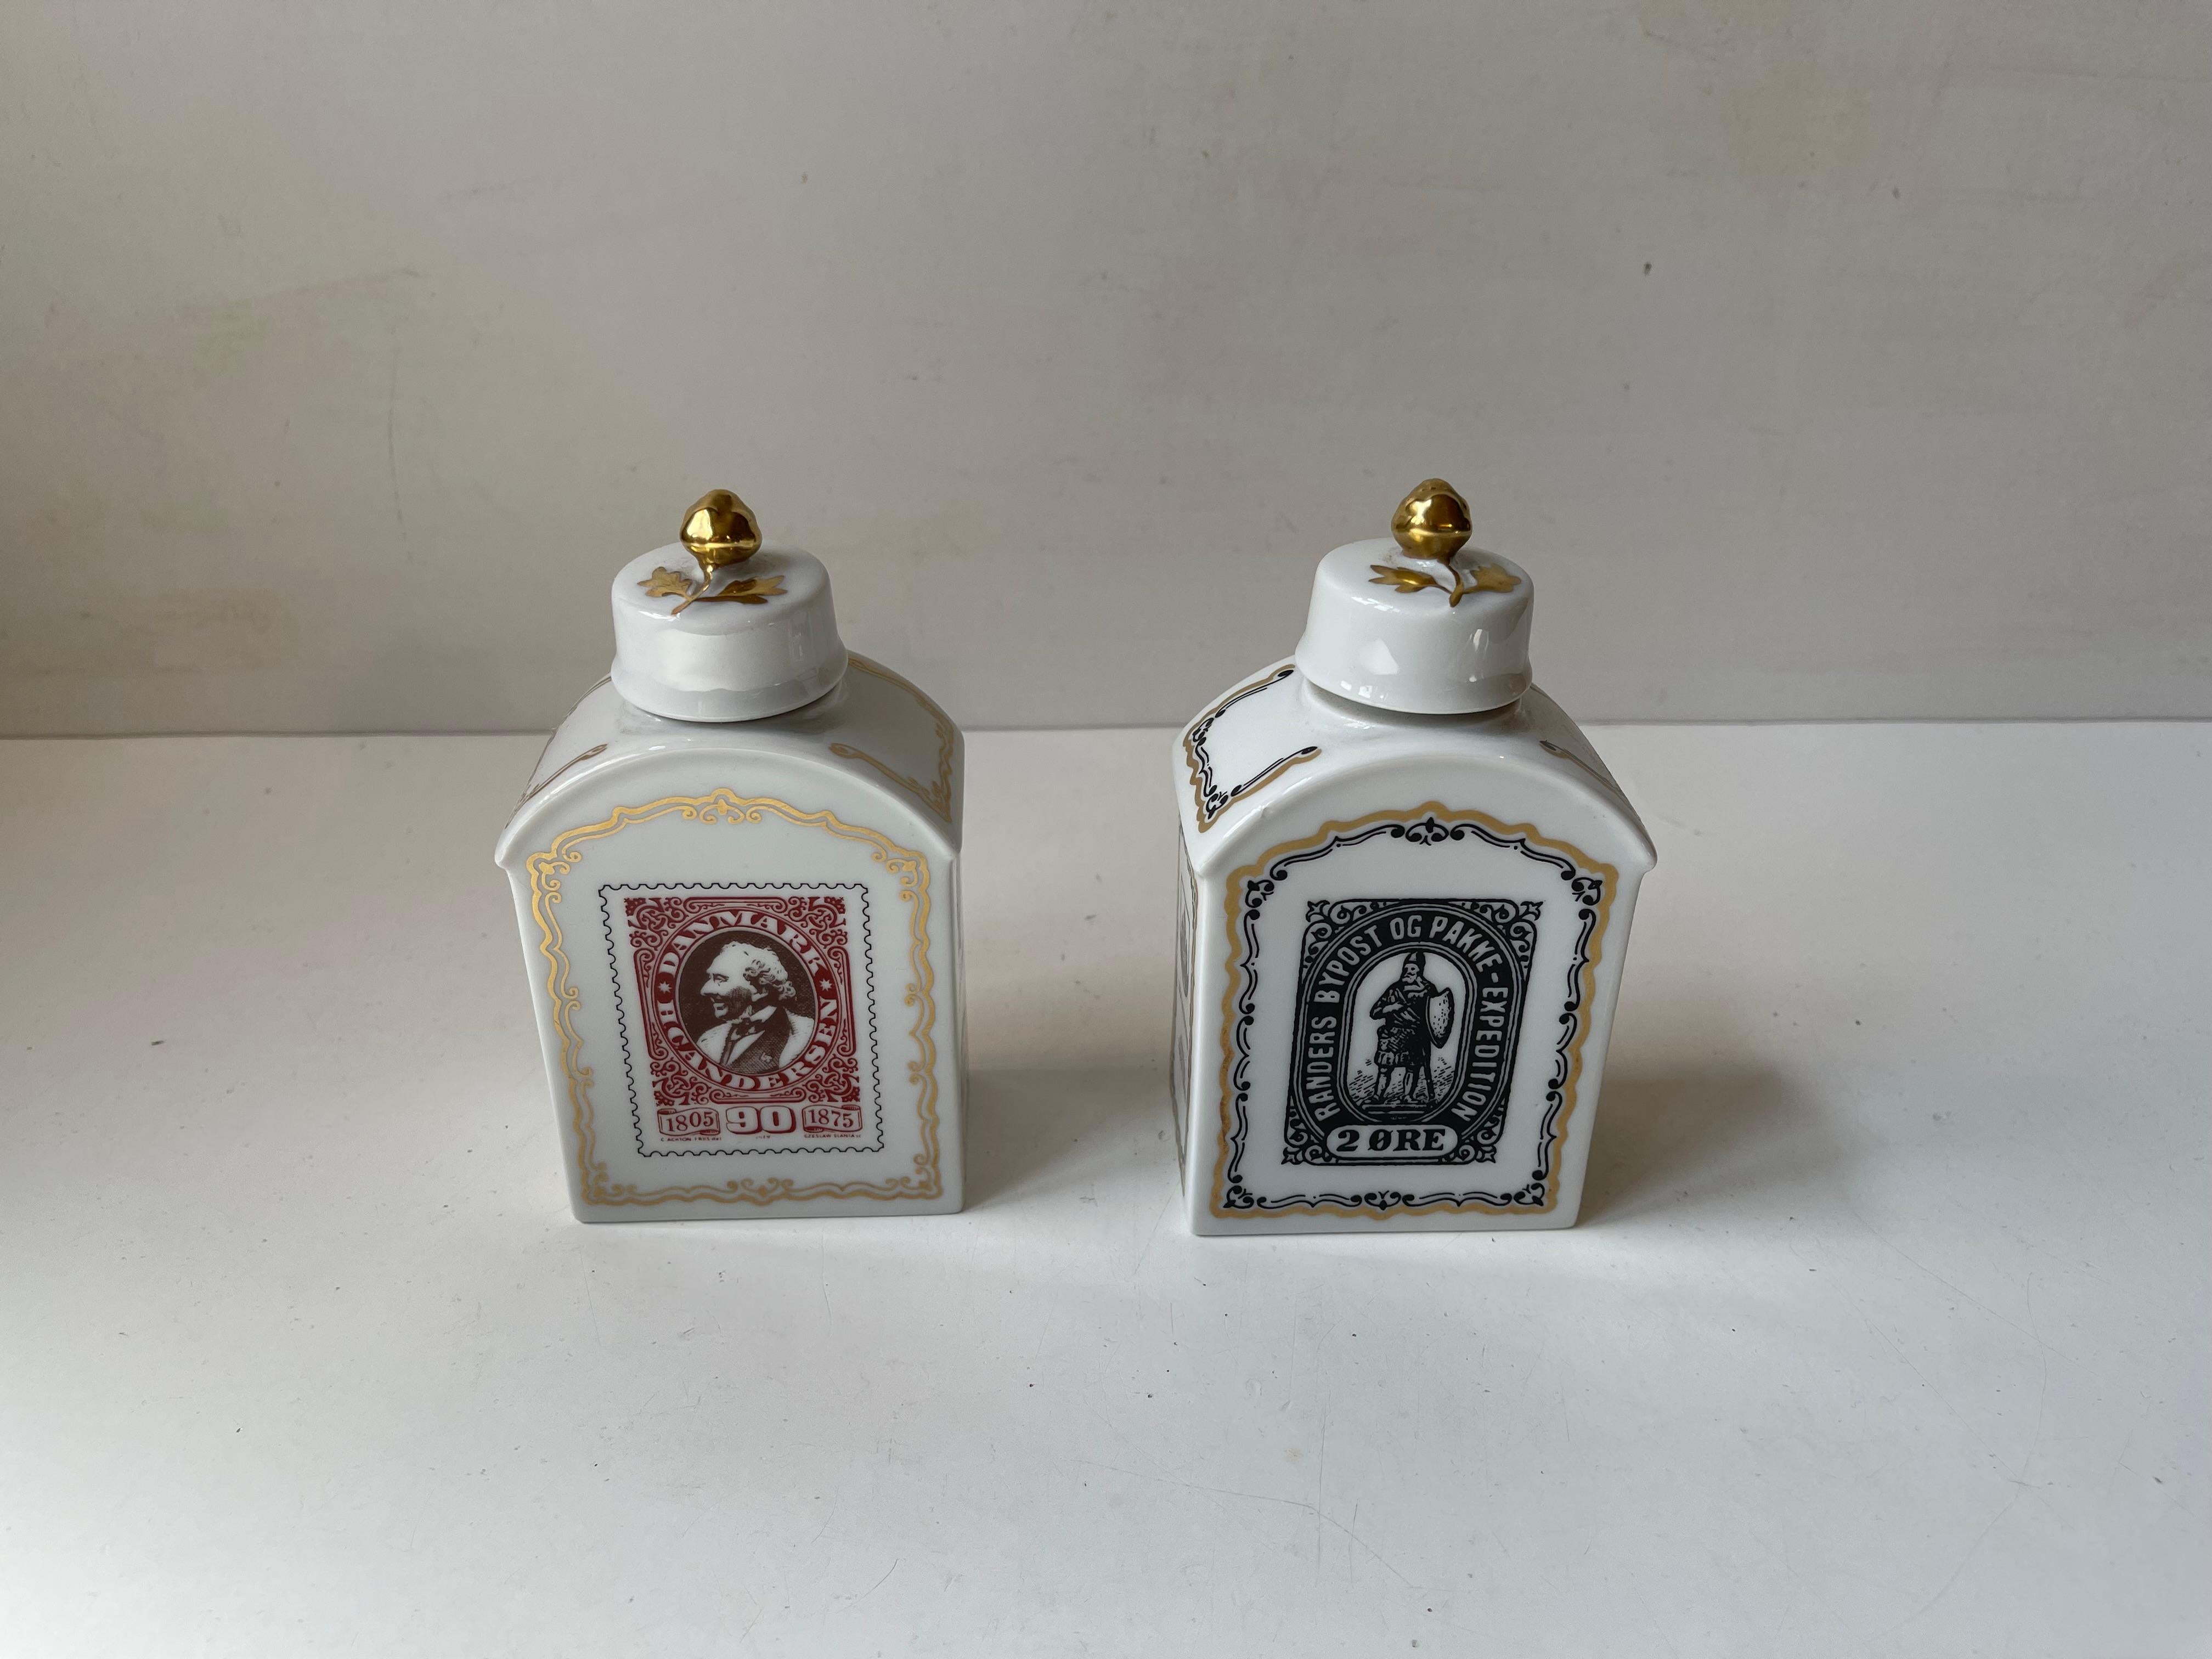 Vintage Förstenberg Porcelain Tea Caddies with Historical Danish Stamps For Sale 1